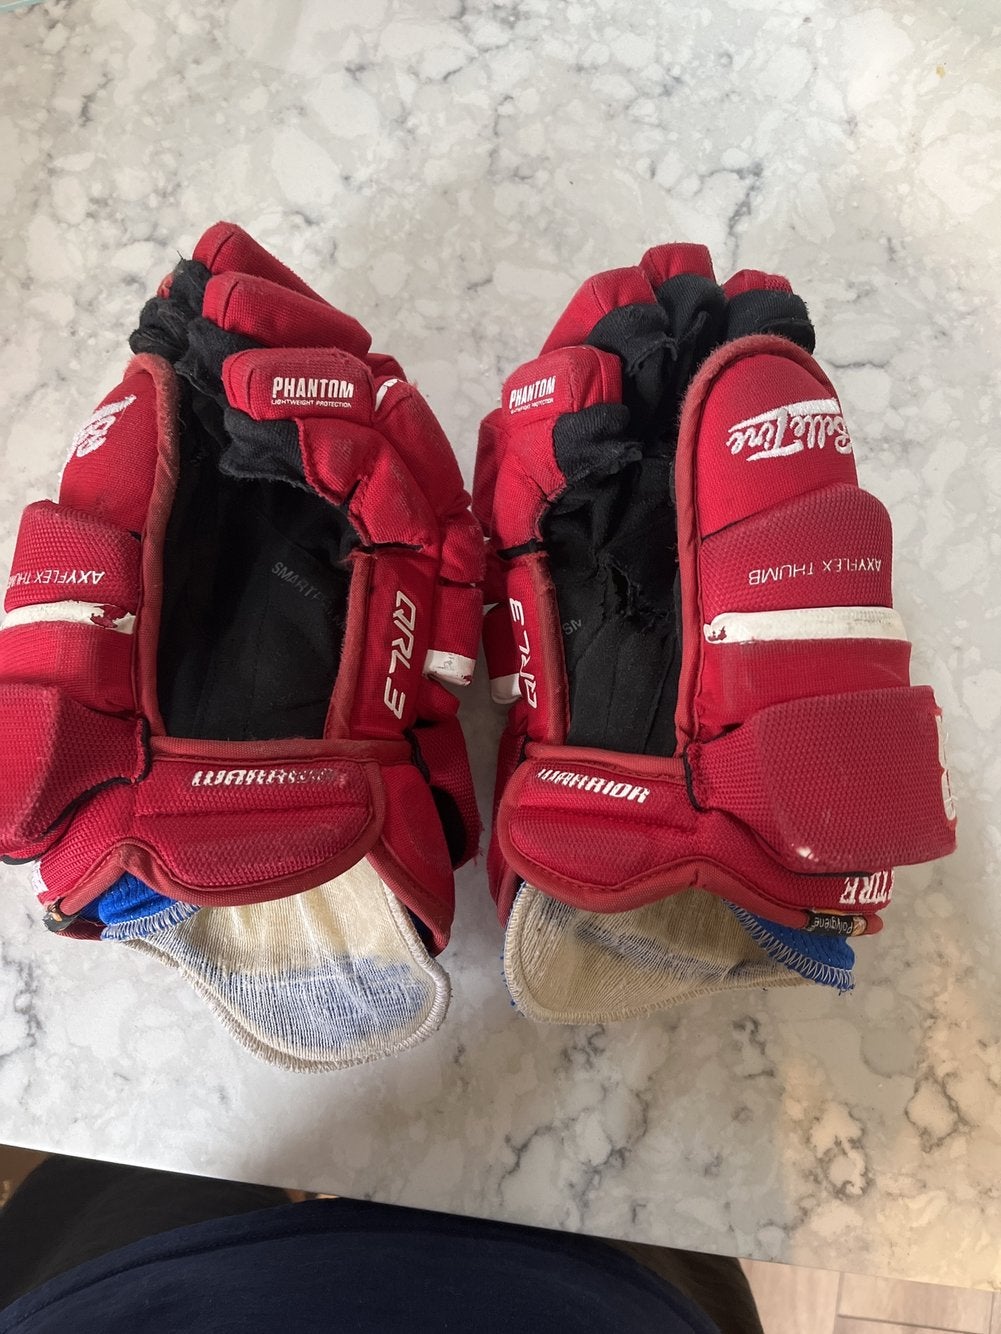 NEW Warrior Covert QRL3 Senior Ice Hockey Gloves Black/Red 